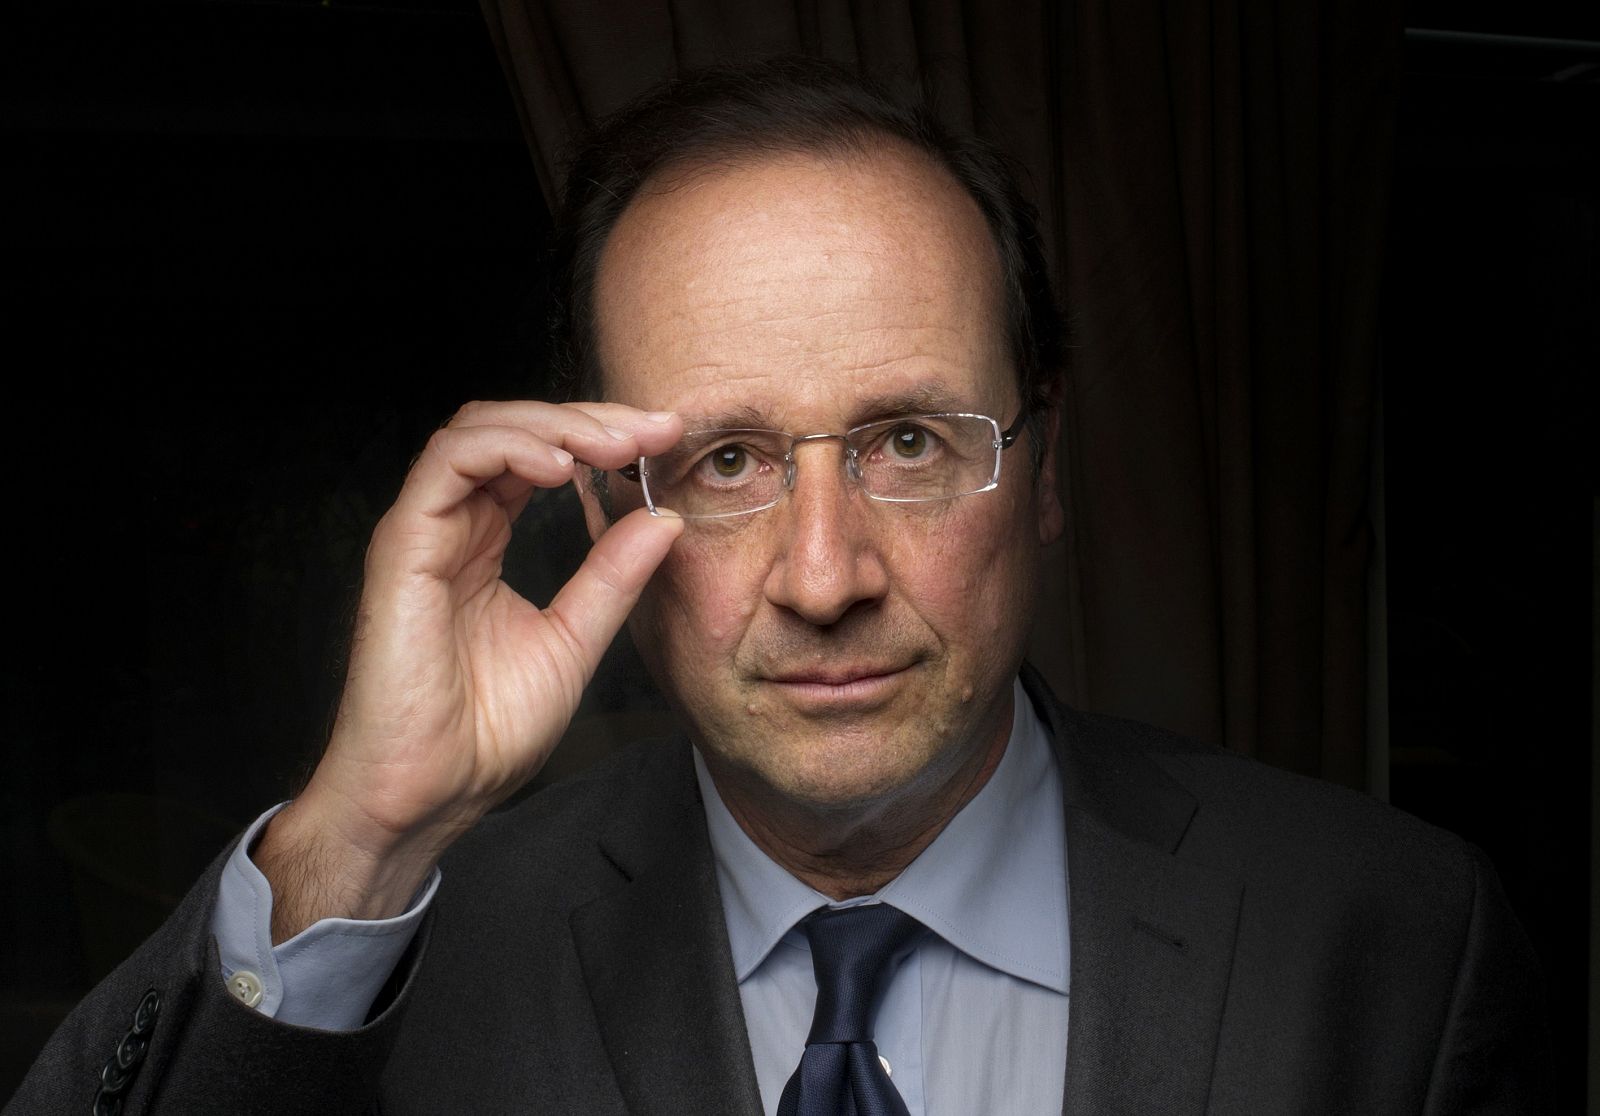 François Hollande, el candidato tranquilo que aspira un destino único.